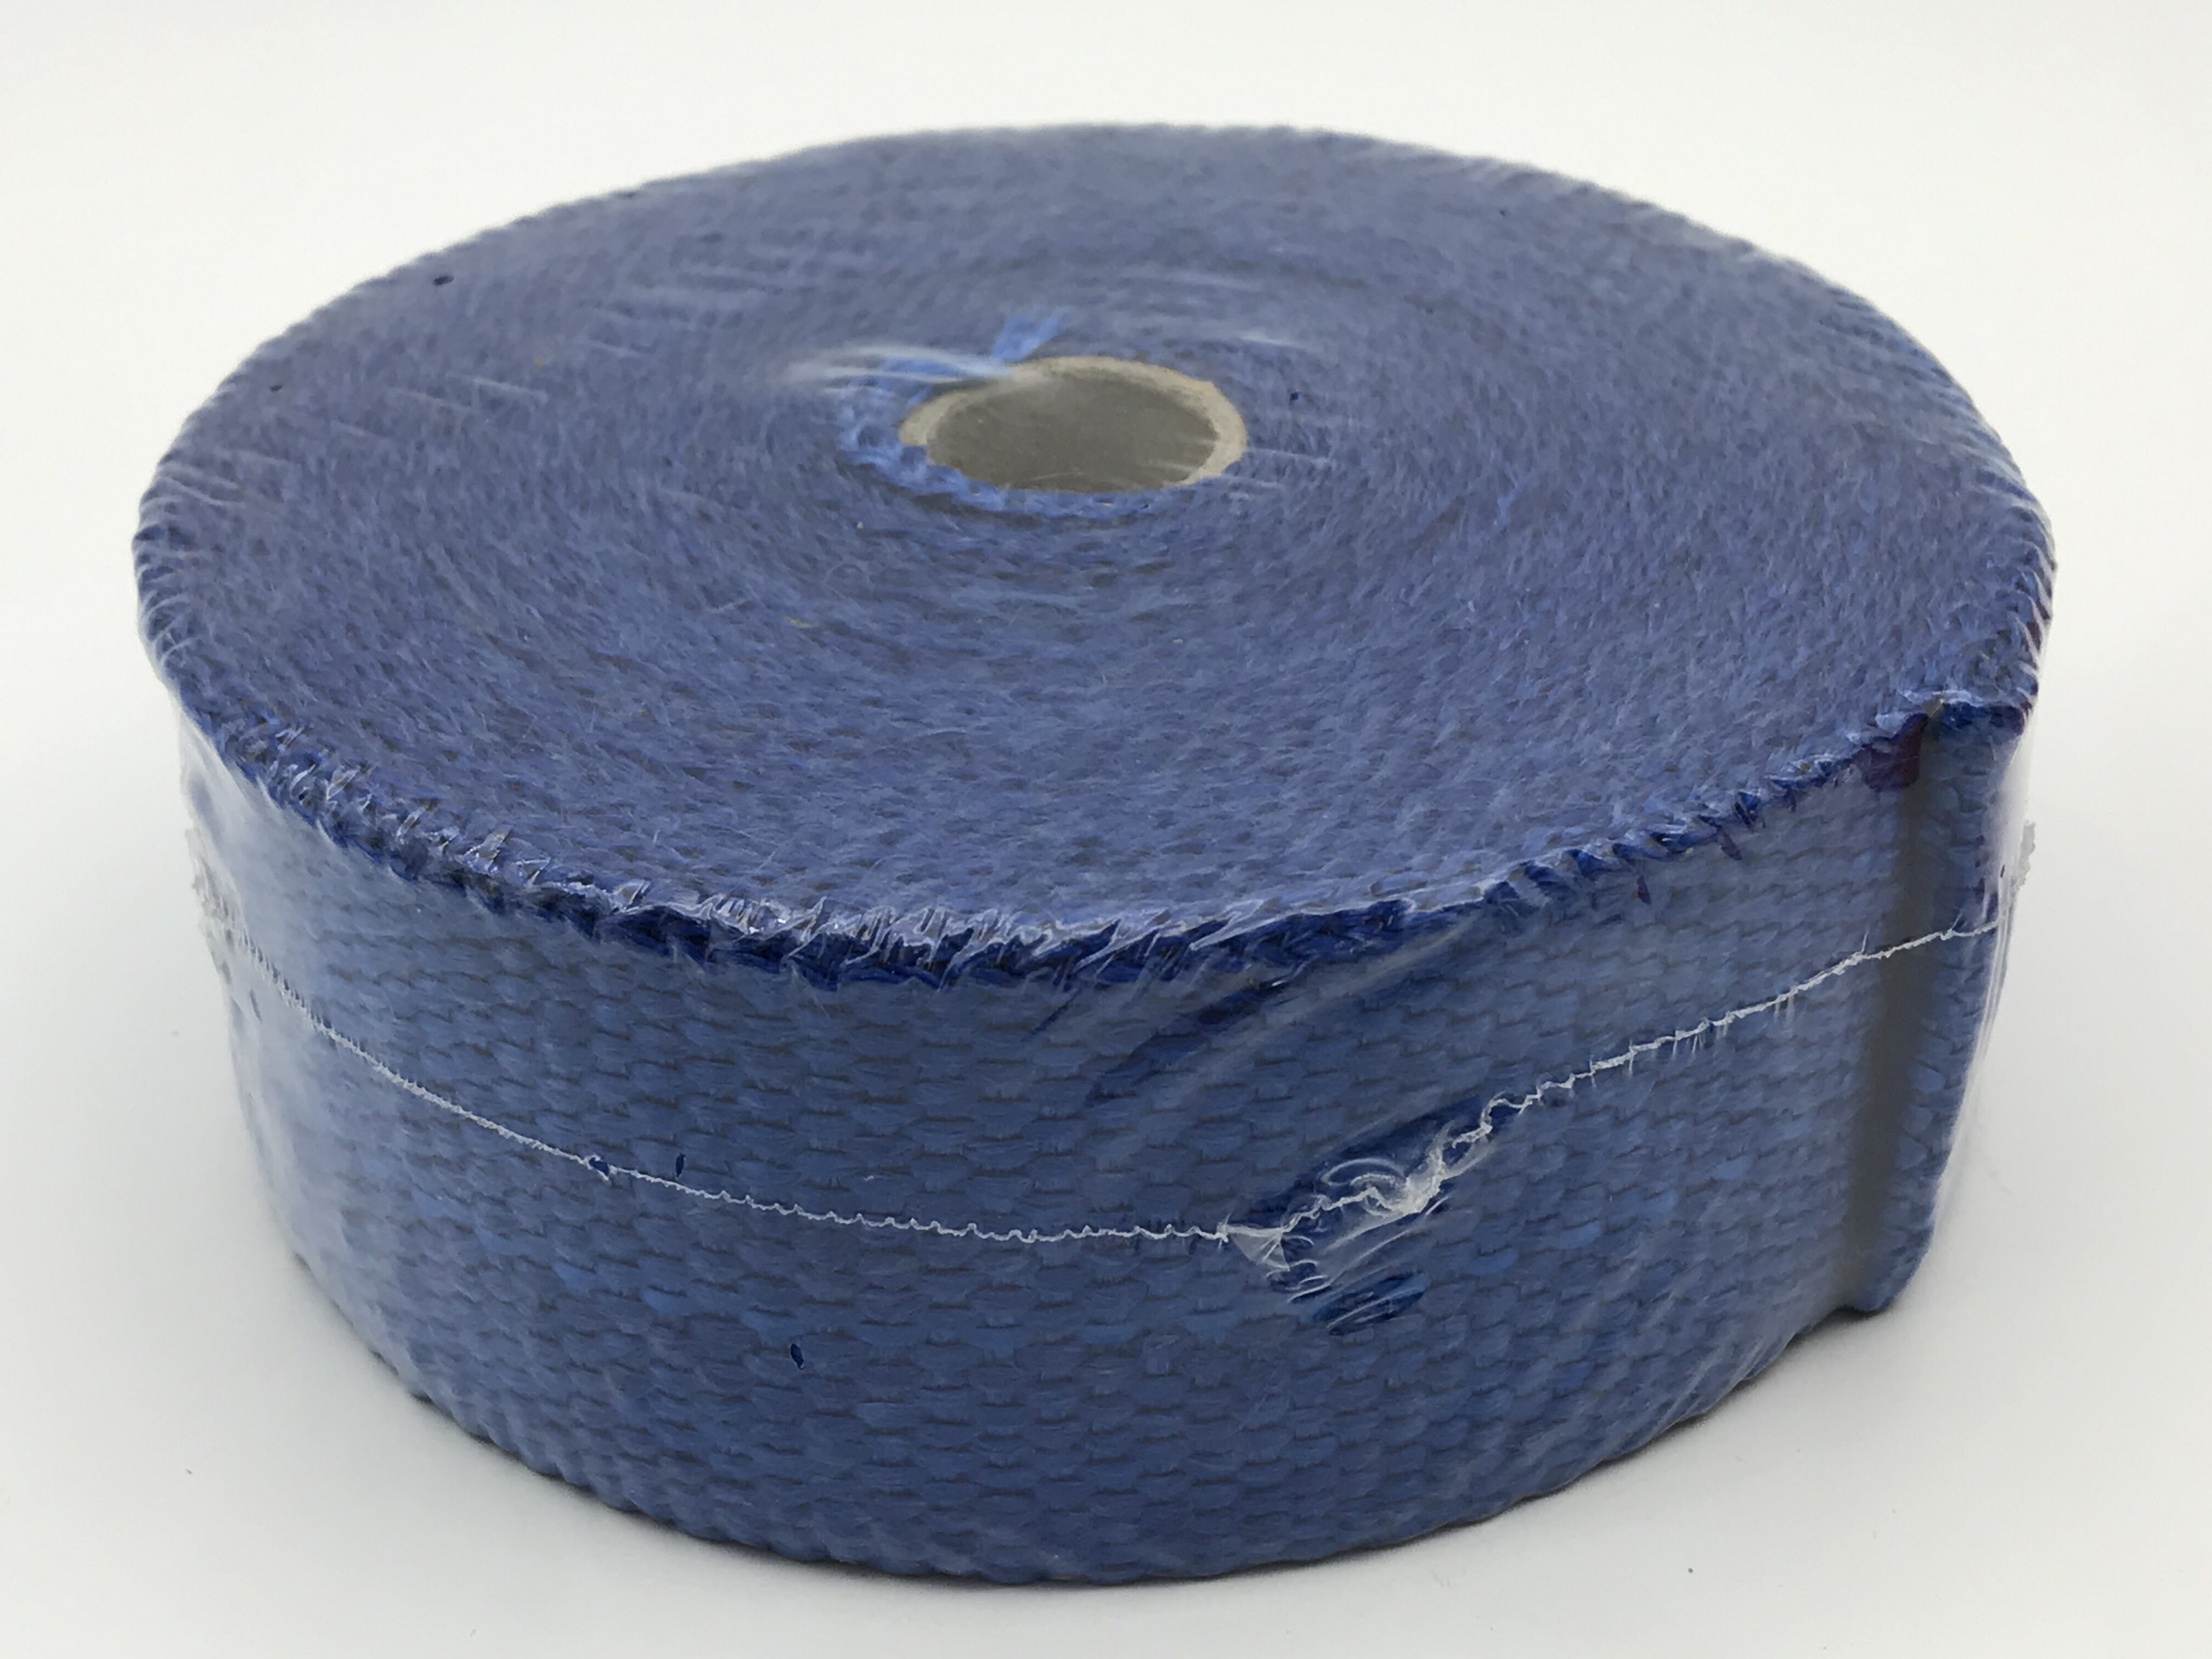 ผ้าพันท่อ ยาว10เมตร สีน้ำเงิน ผ้าพันท่อ ไอเสีย เฮดเดอร์ความกว้าง 2 นิ้ว ใช้ป้องกันความร้อนที่ท่อไอเสีย